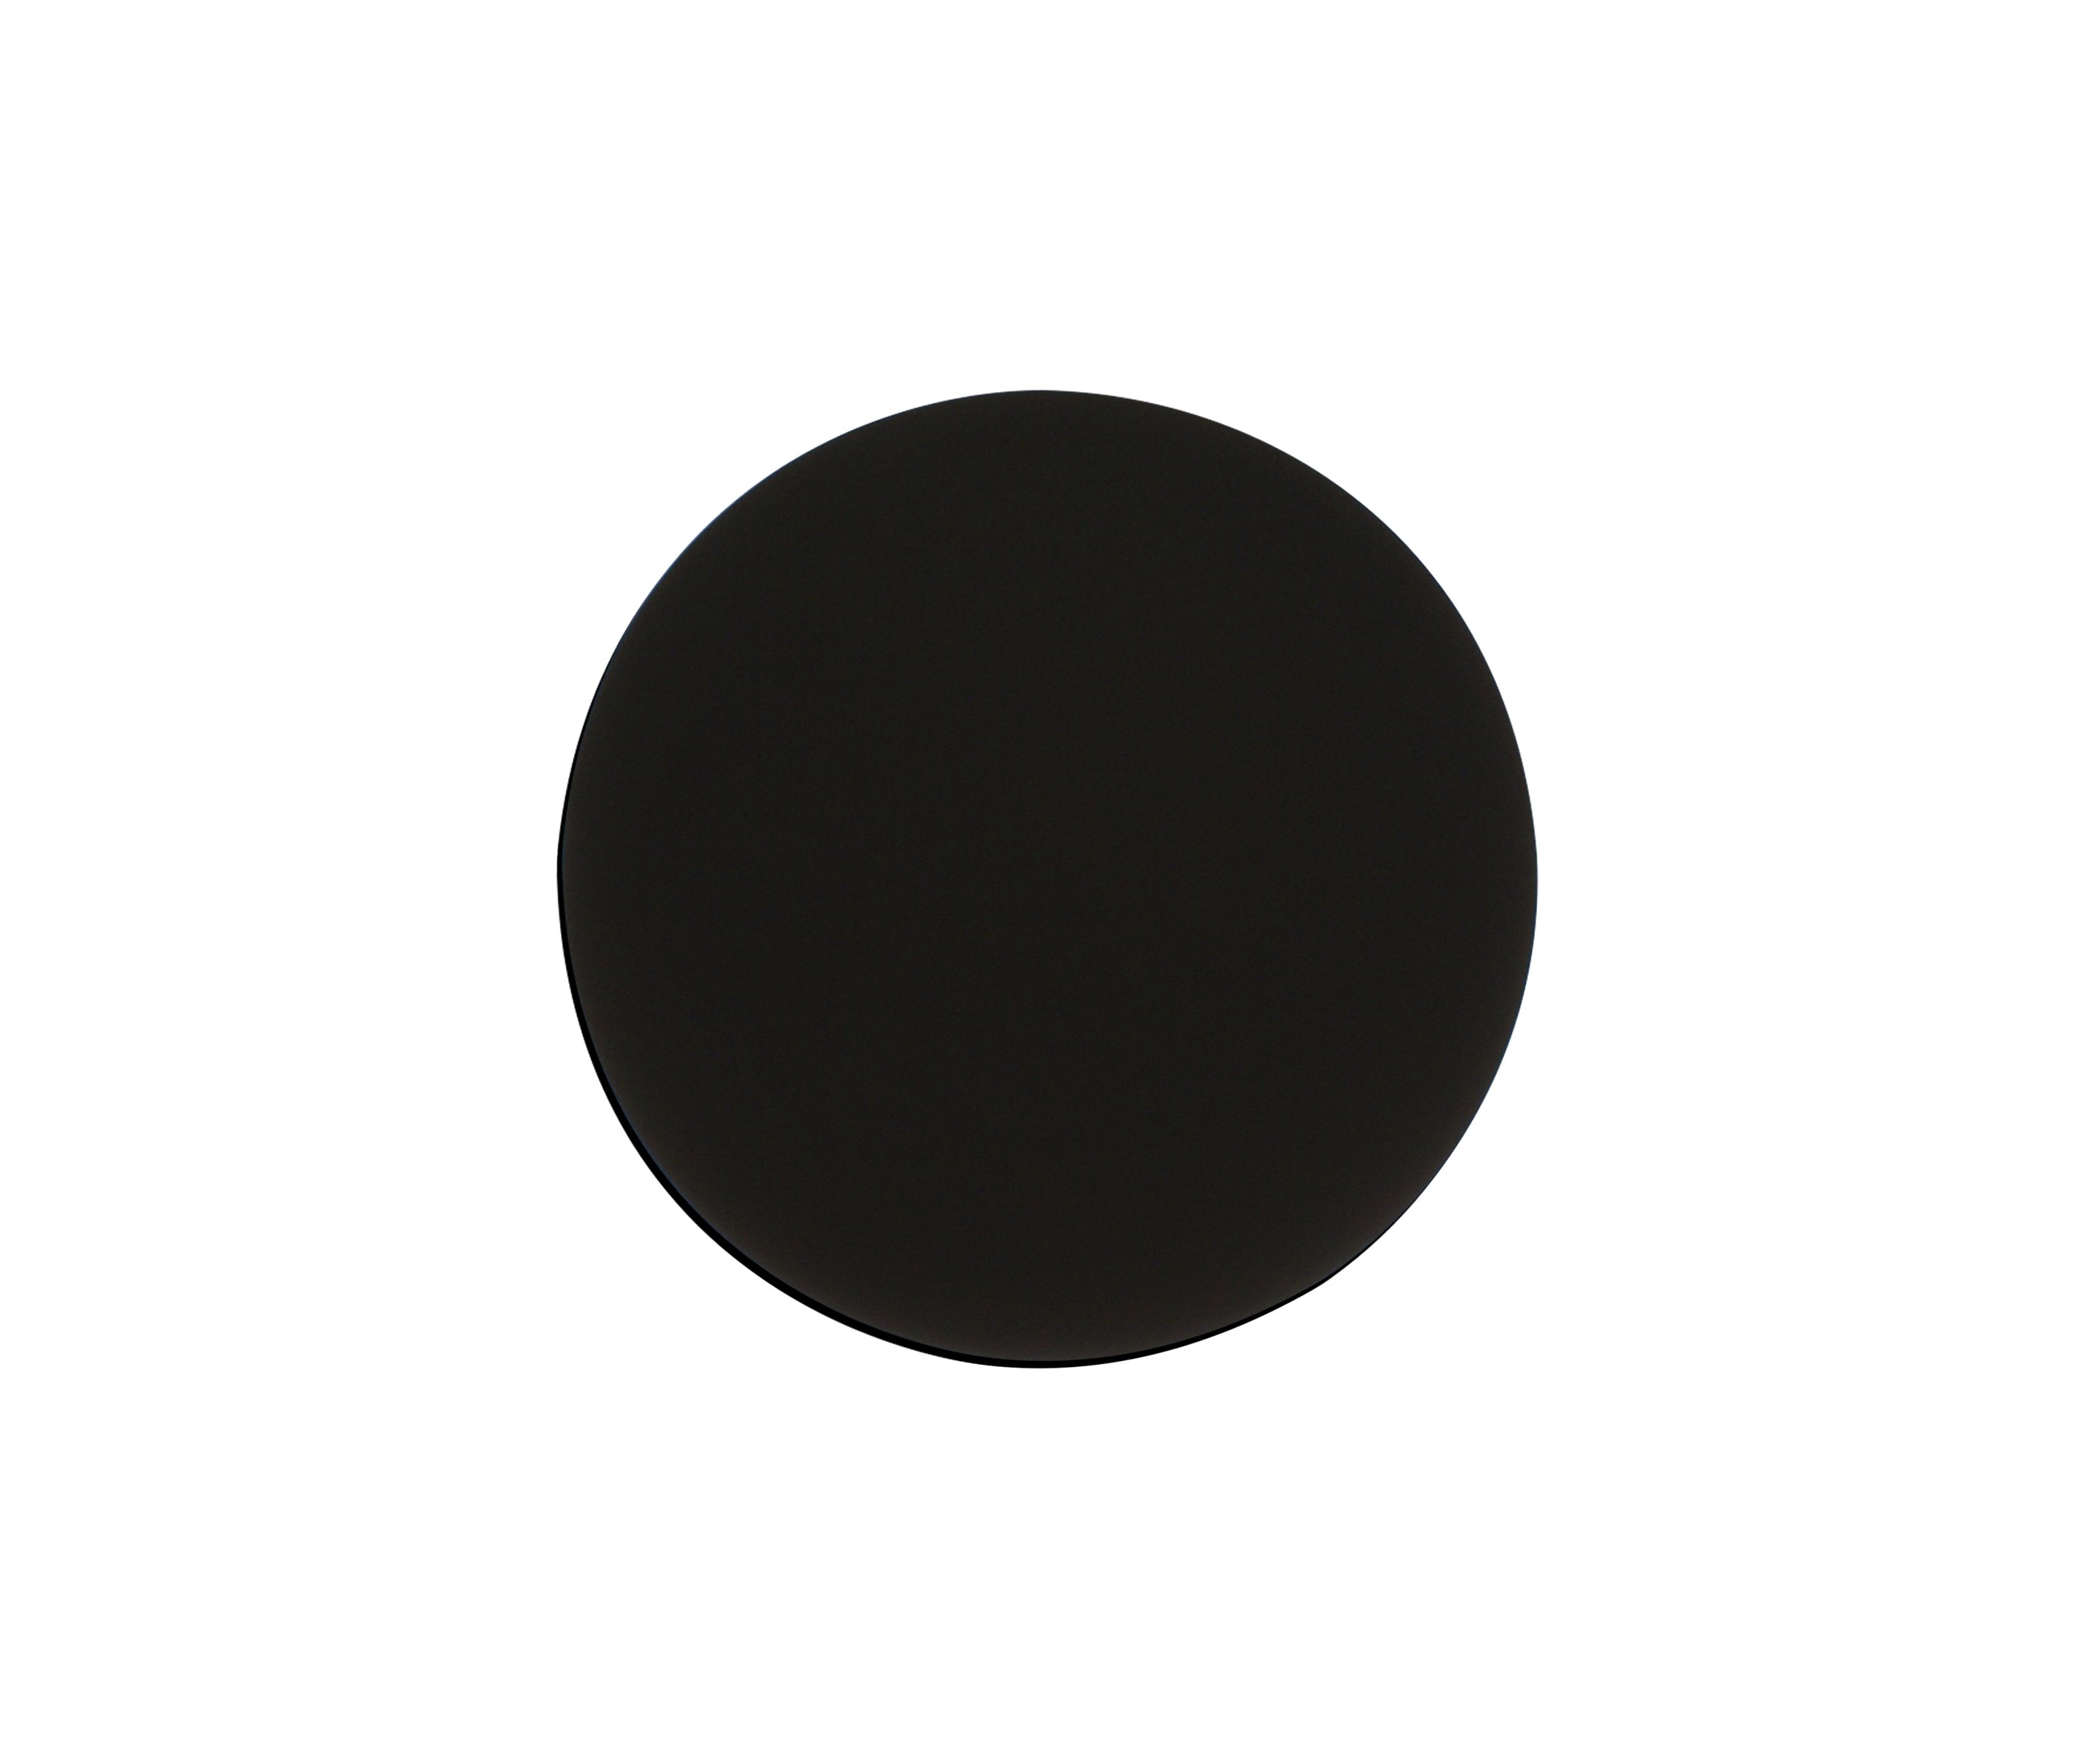 Что значит черный круг. Бра затмение 2201,19. Светильник kink Light затмение 2200,19 черный. Черный круг. Черные кружочки.